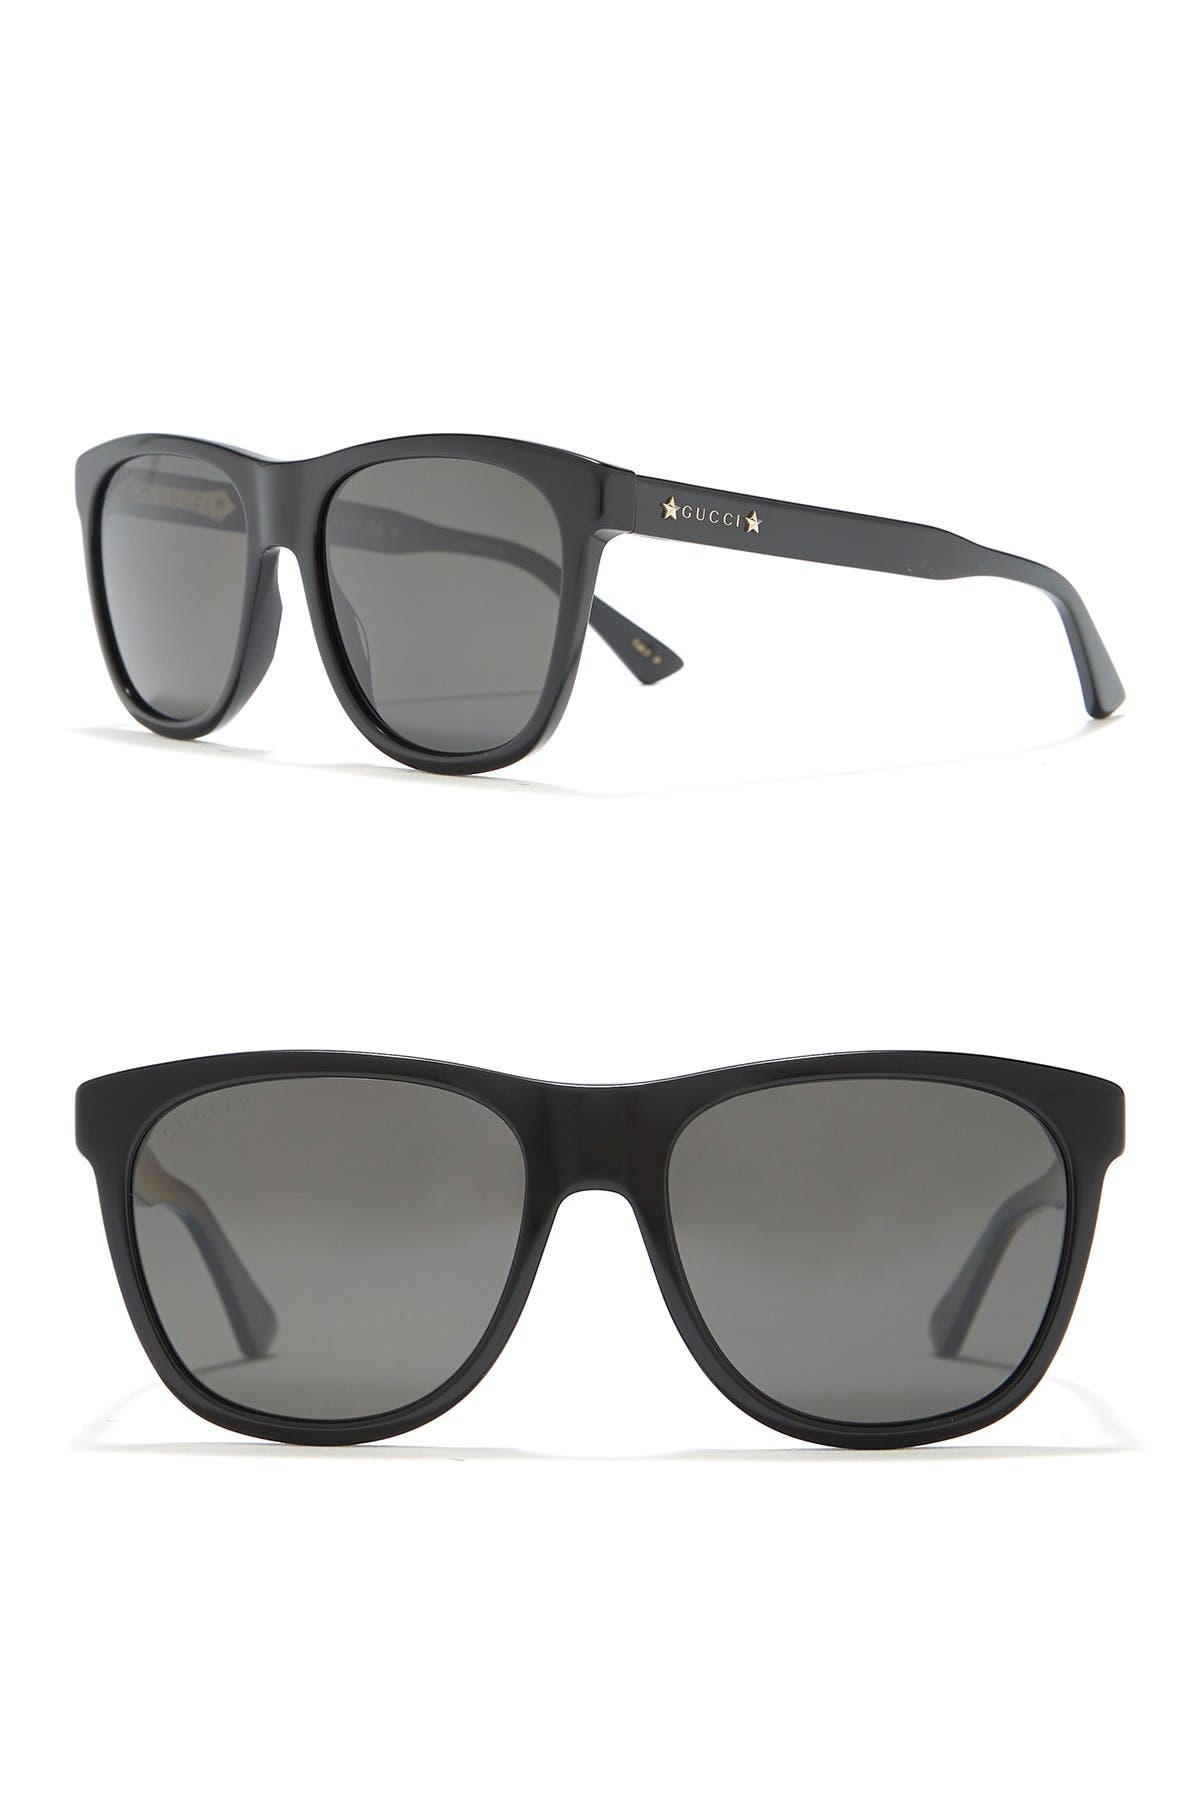 GUCCI | 55mm Square Sunglasses | HauteLook